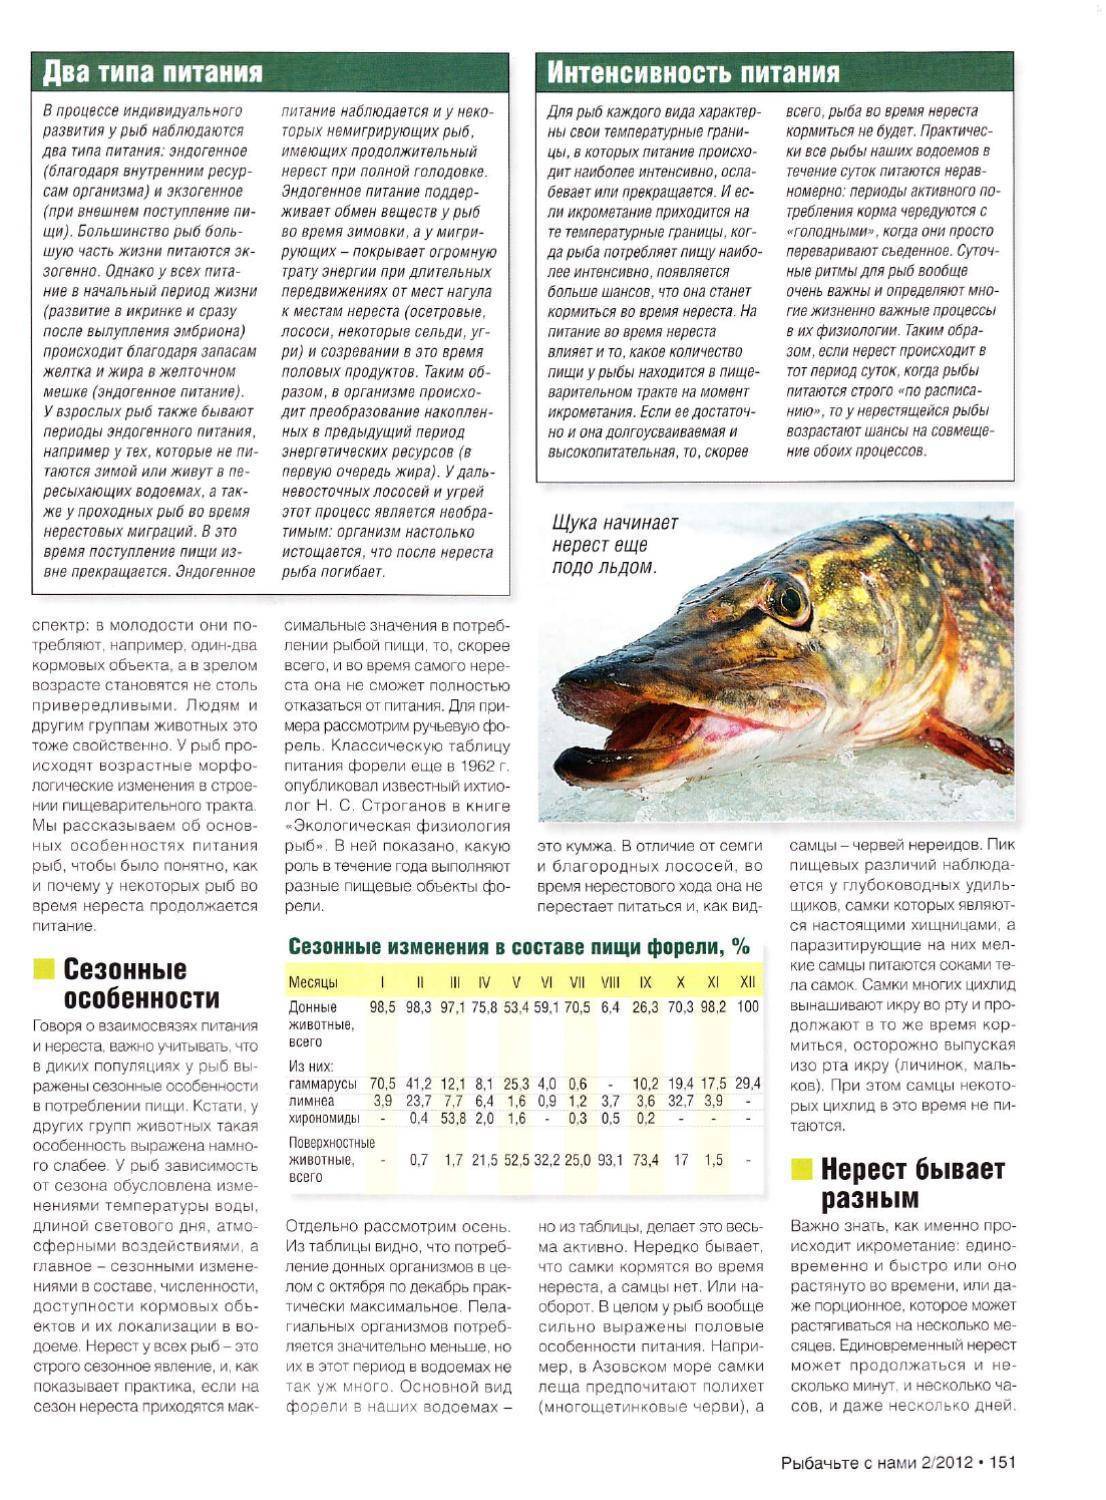 Рыба чир или щокур: описание, обитание, питание, нерест, ловля и выращивание